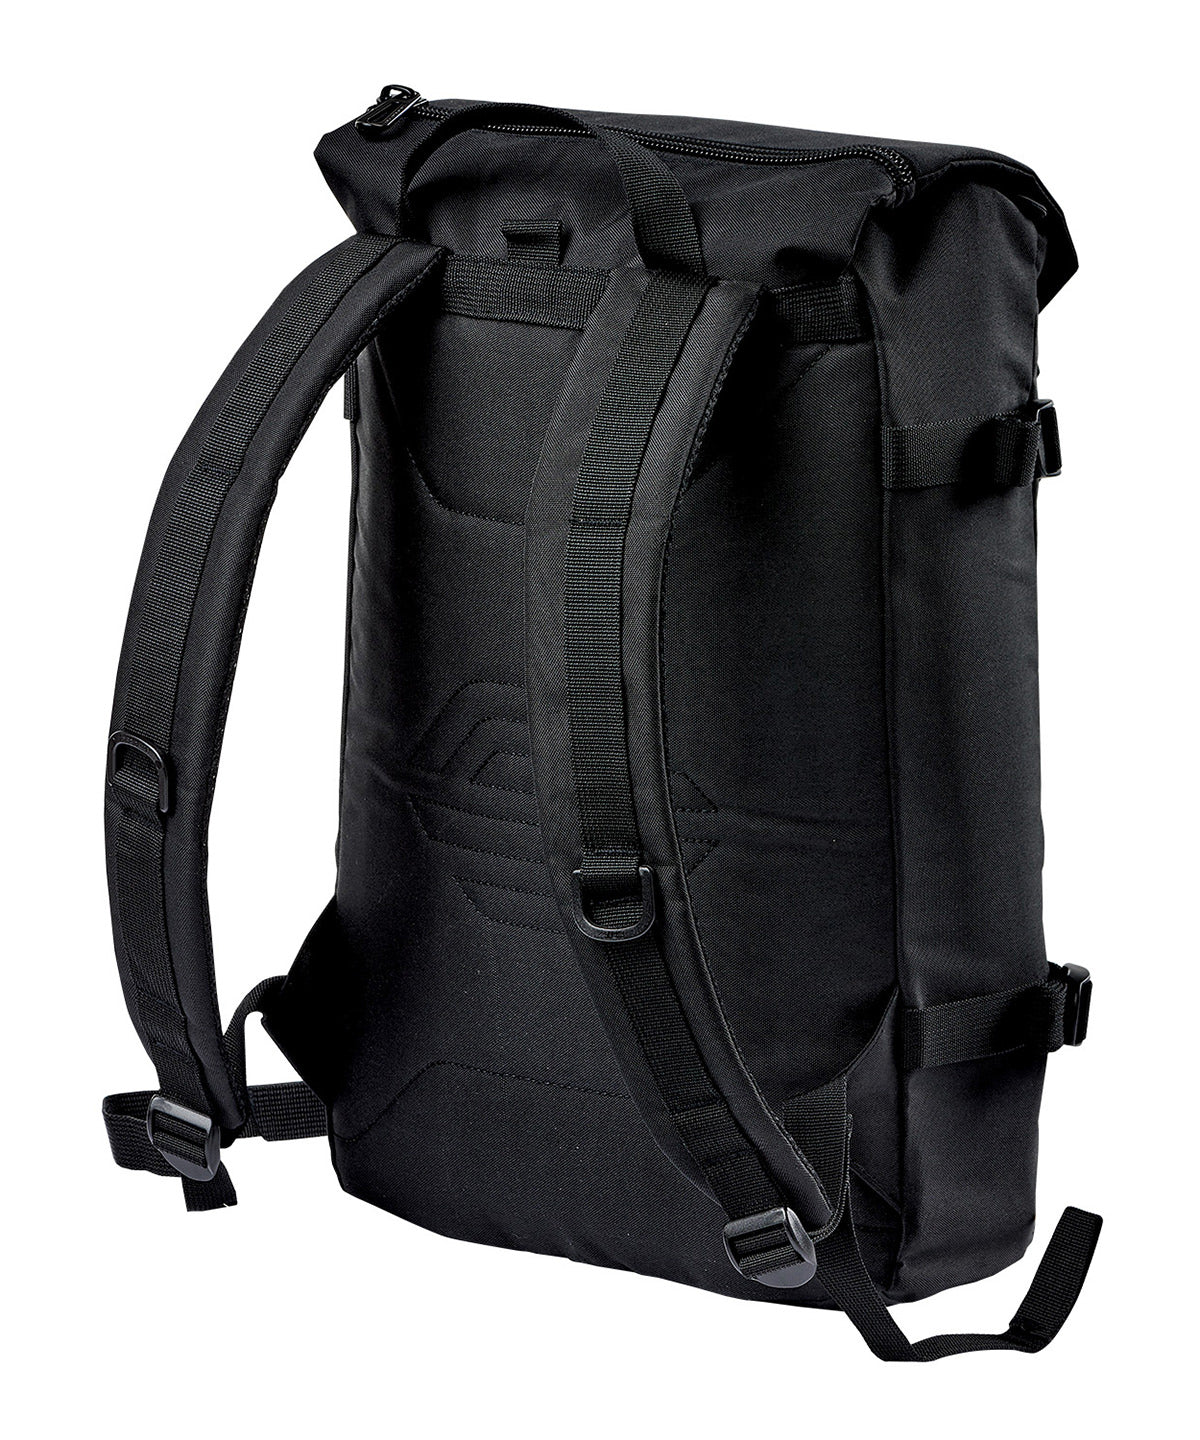 Storm Tech ST234
Chappaqua backpack